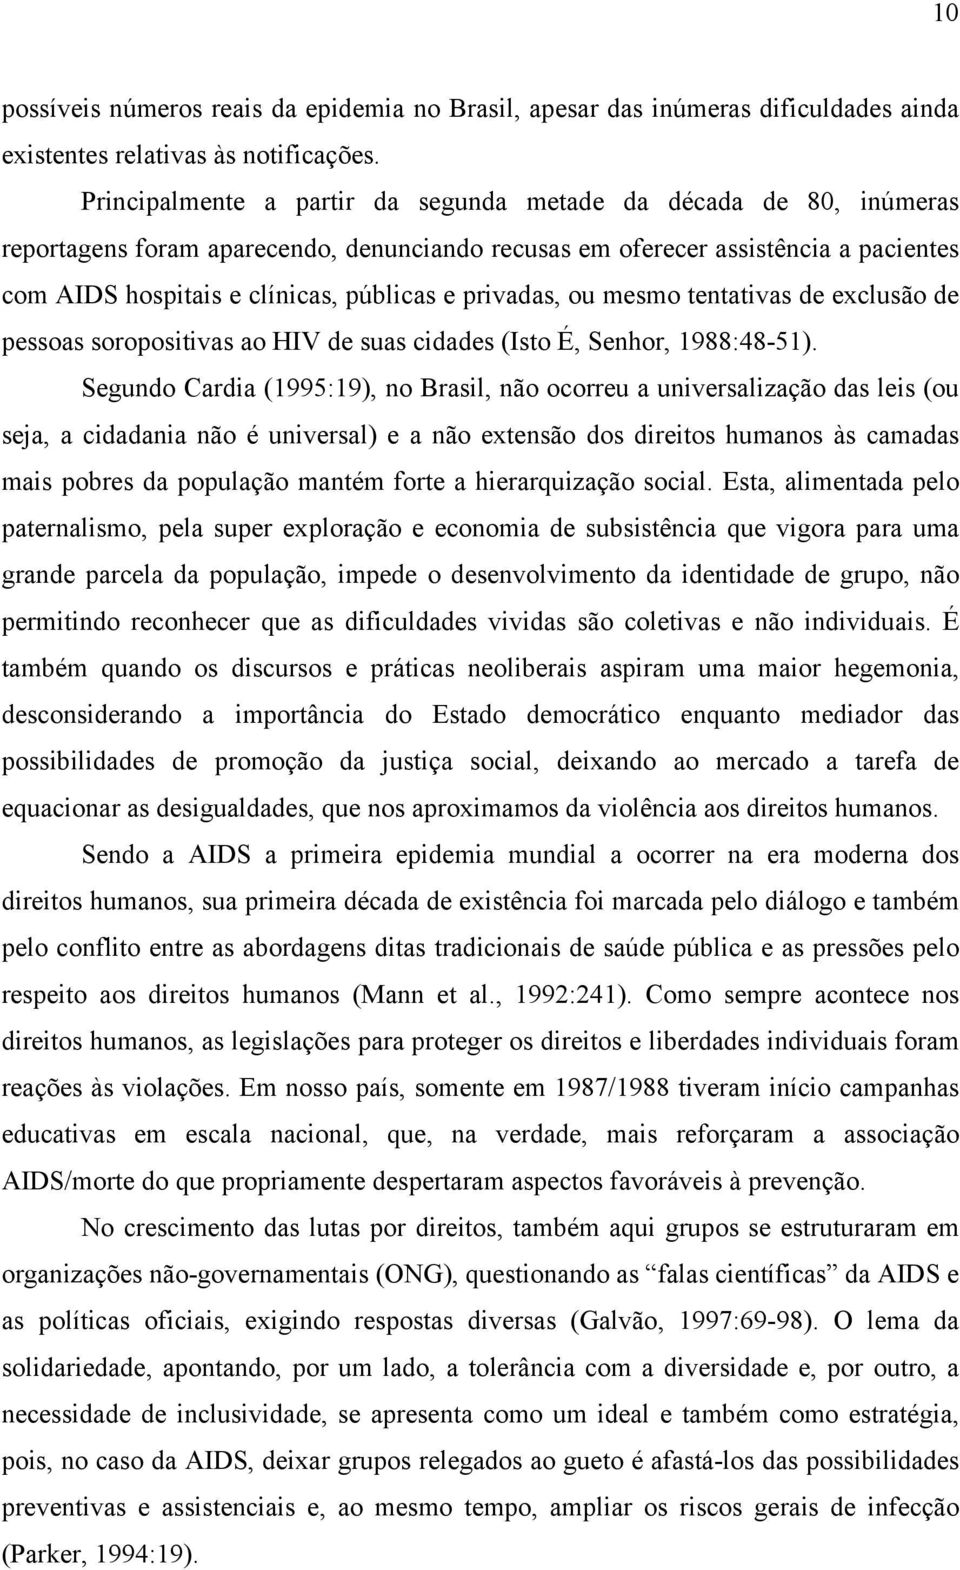 privadas, ou mesmo tentativas de exclusão de pessoas soropositivas ao HIV de suas cidades (Isto É, Senhor, 1988:48-51).